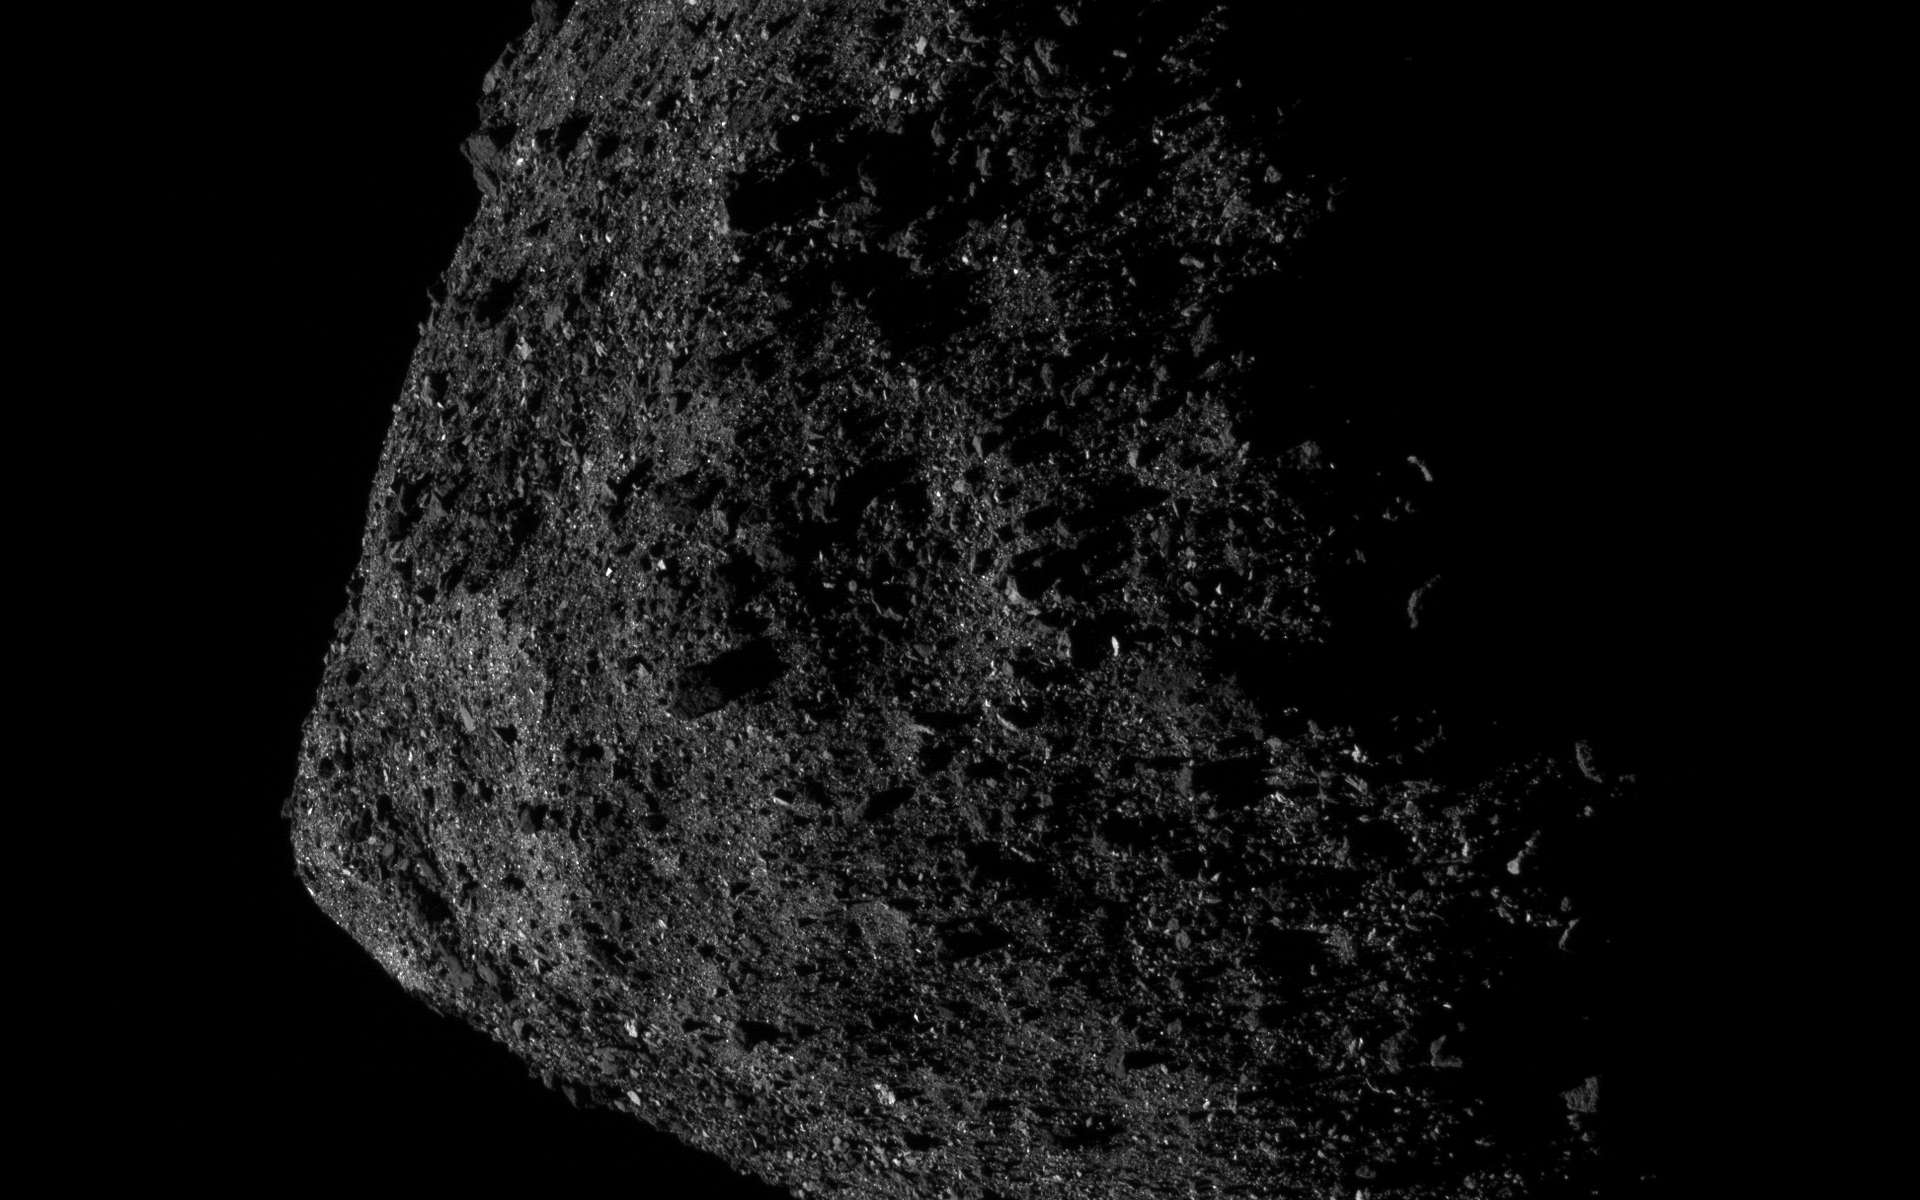 L'astéroïde Bennu comme vous ne l'avez jamais vu !